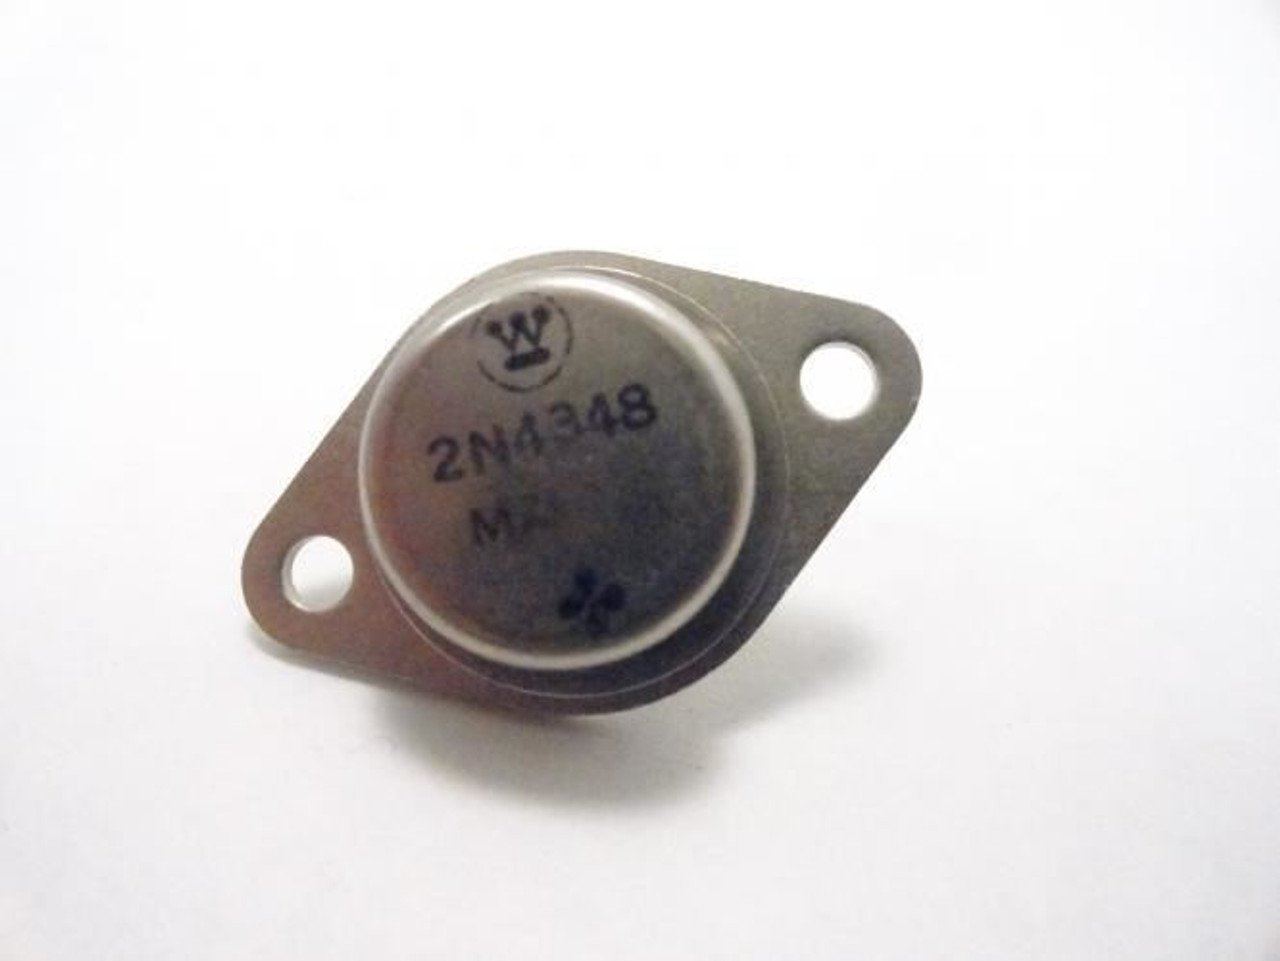 Westinghouse 2N4348; Transistor; 180V